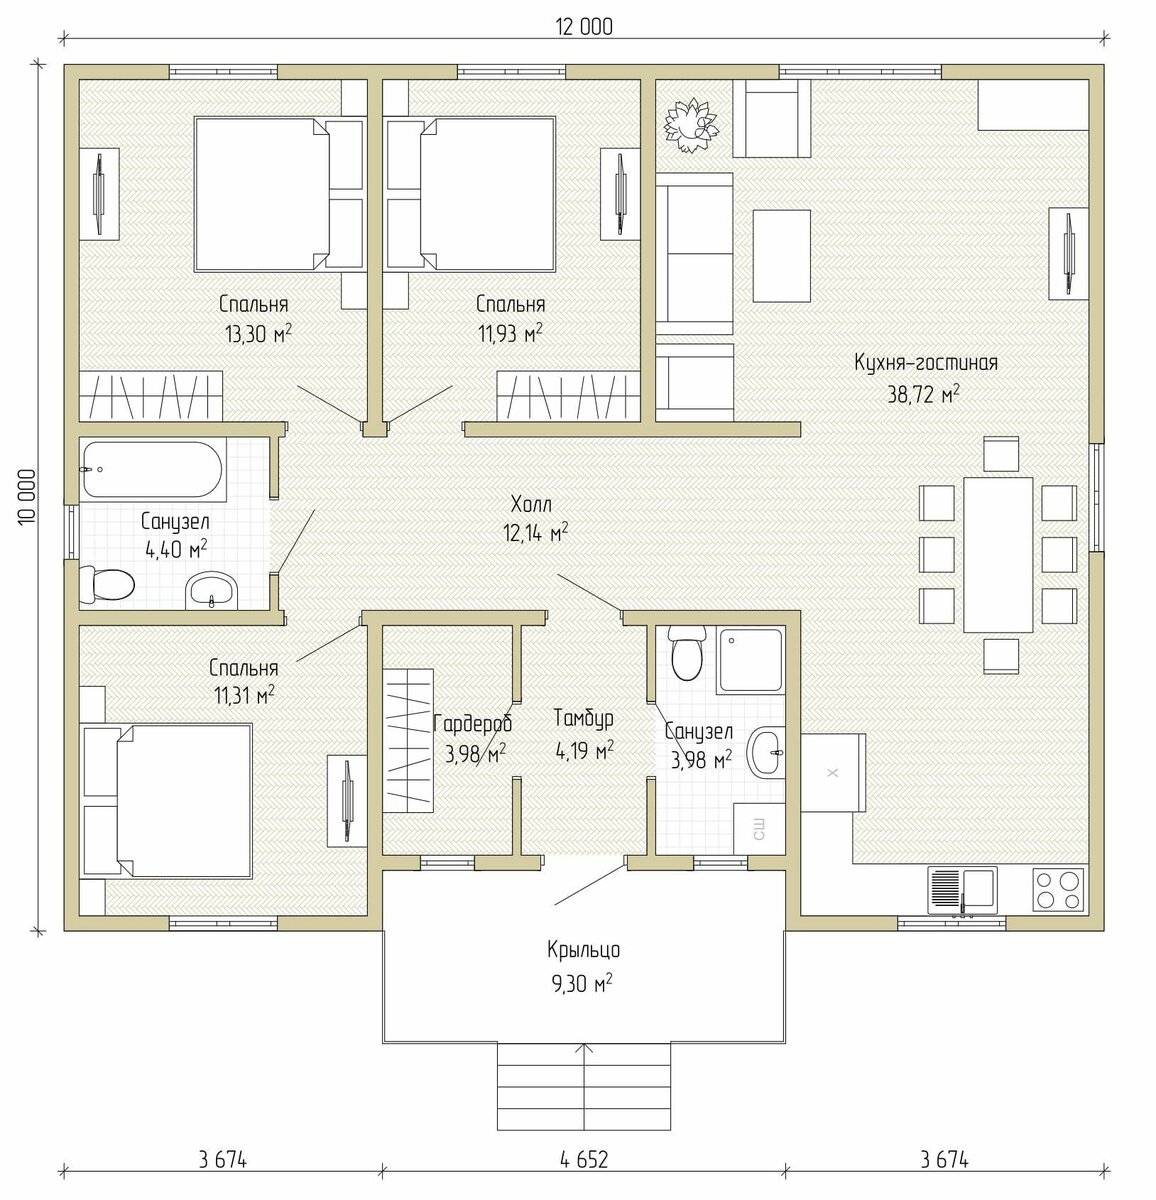 Проекты одноэтажных домов с тремя спальнями: планировка по правилам. новости партнеров - новости партнеров 63. metro